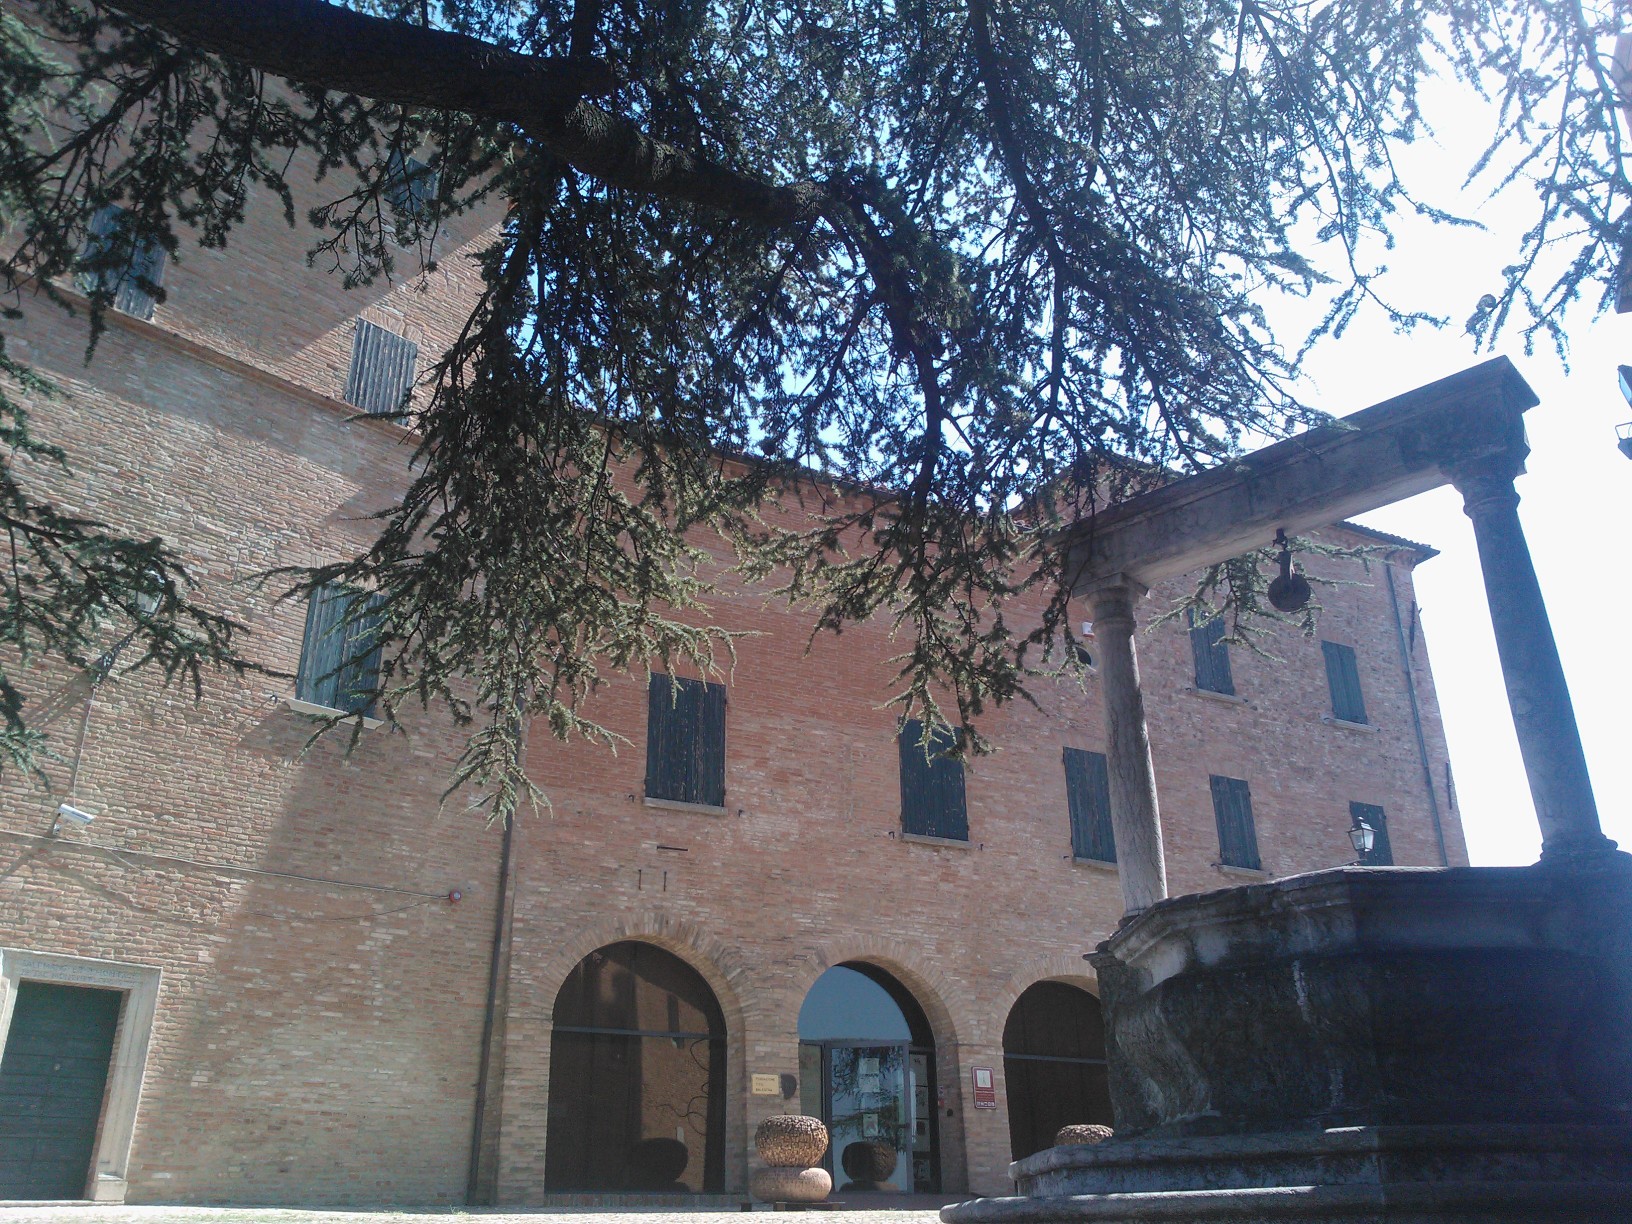 foto: https://upload.wikimedia.org/wikipedia/commons/5/5c/Castello_Malatestiano-_Fondazione_Tito_Balestra.jpg